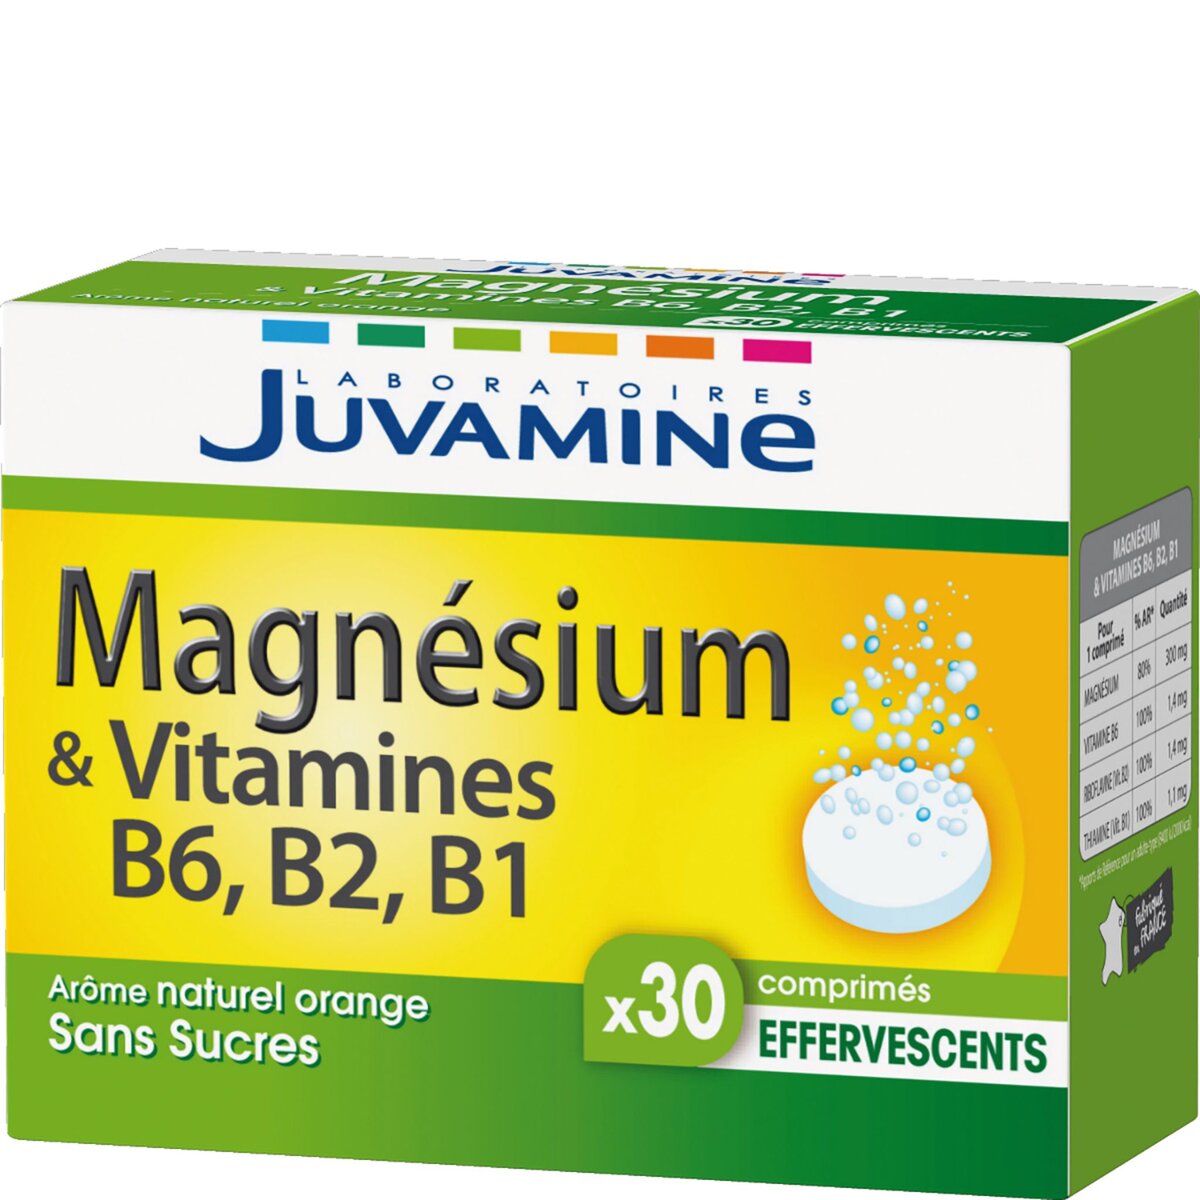 JUVAMINE Juvamine fizz magnésium vitamine B6 B2 B1 comprimé x30-71,2g